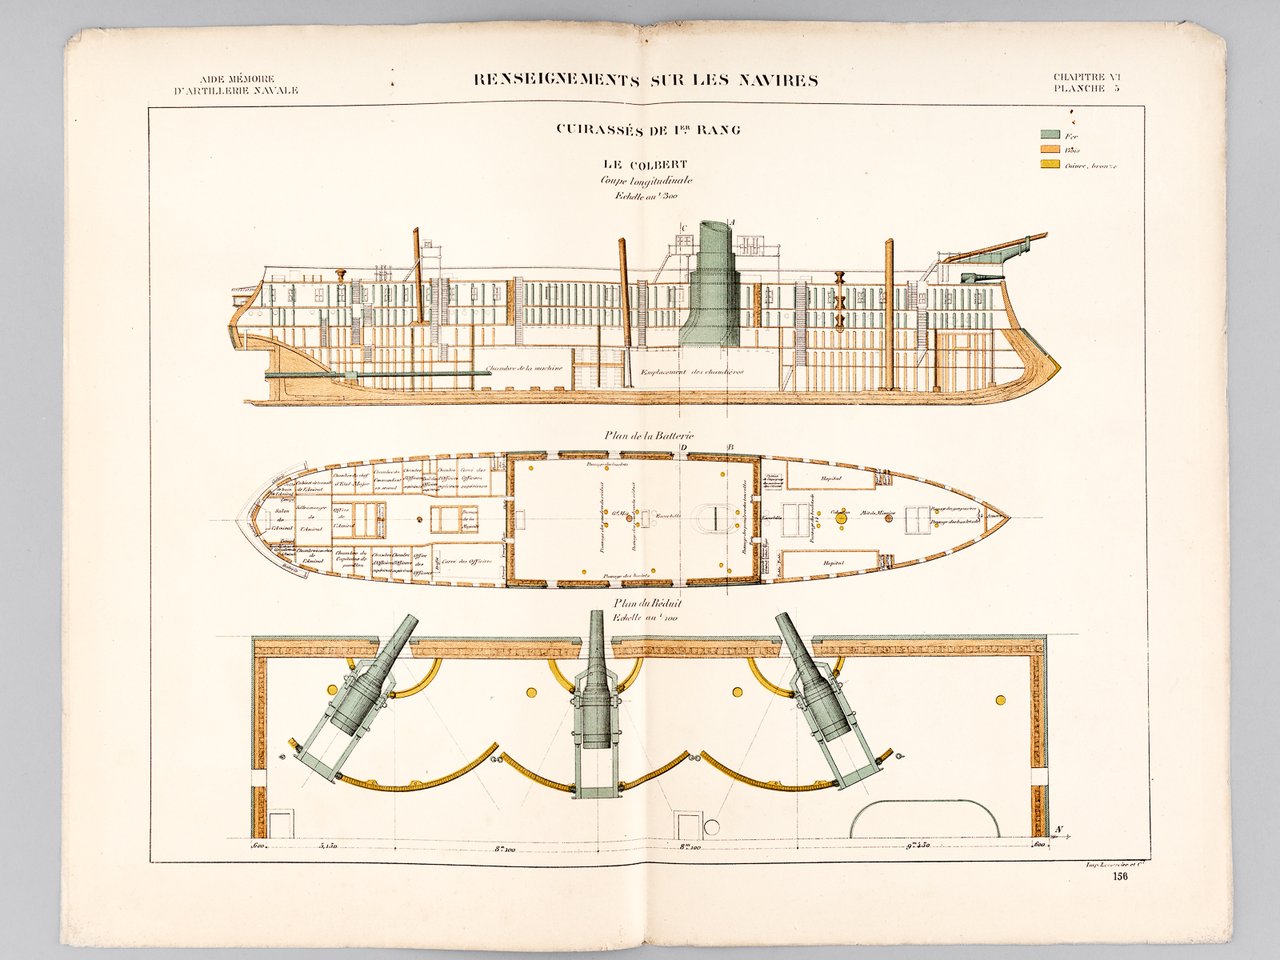 Aide-Mémoire d'Artillerie Navale. Planches. 3e Livraison 1878 (Chapitre VI : …